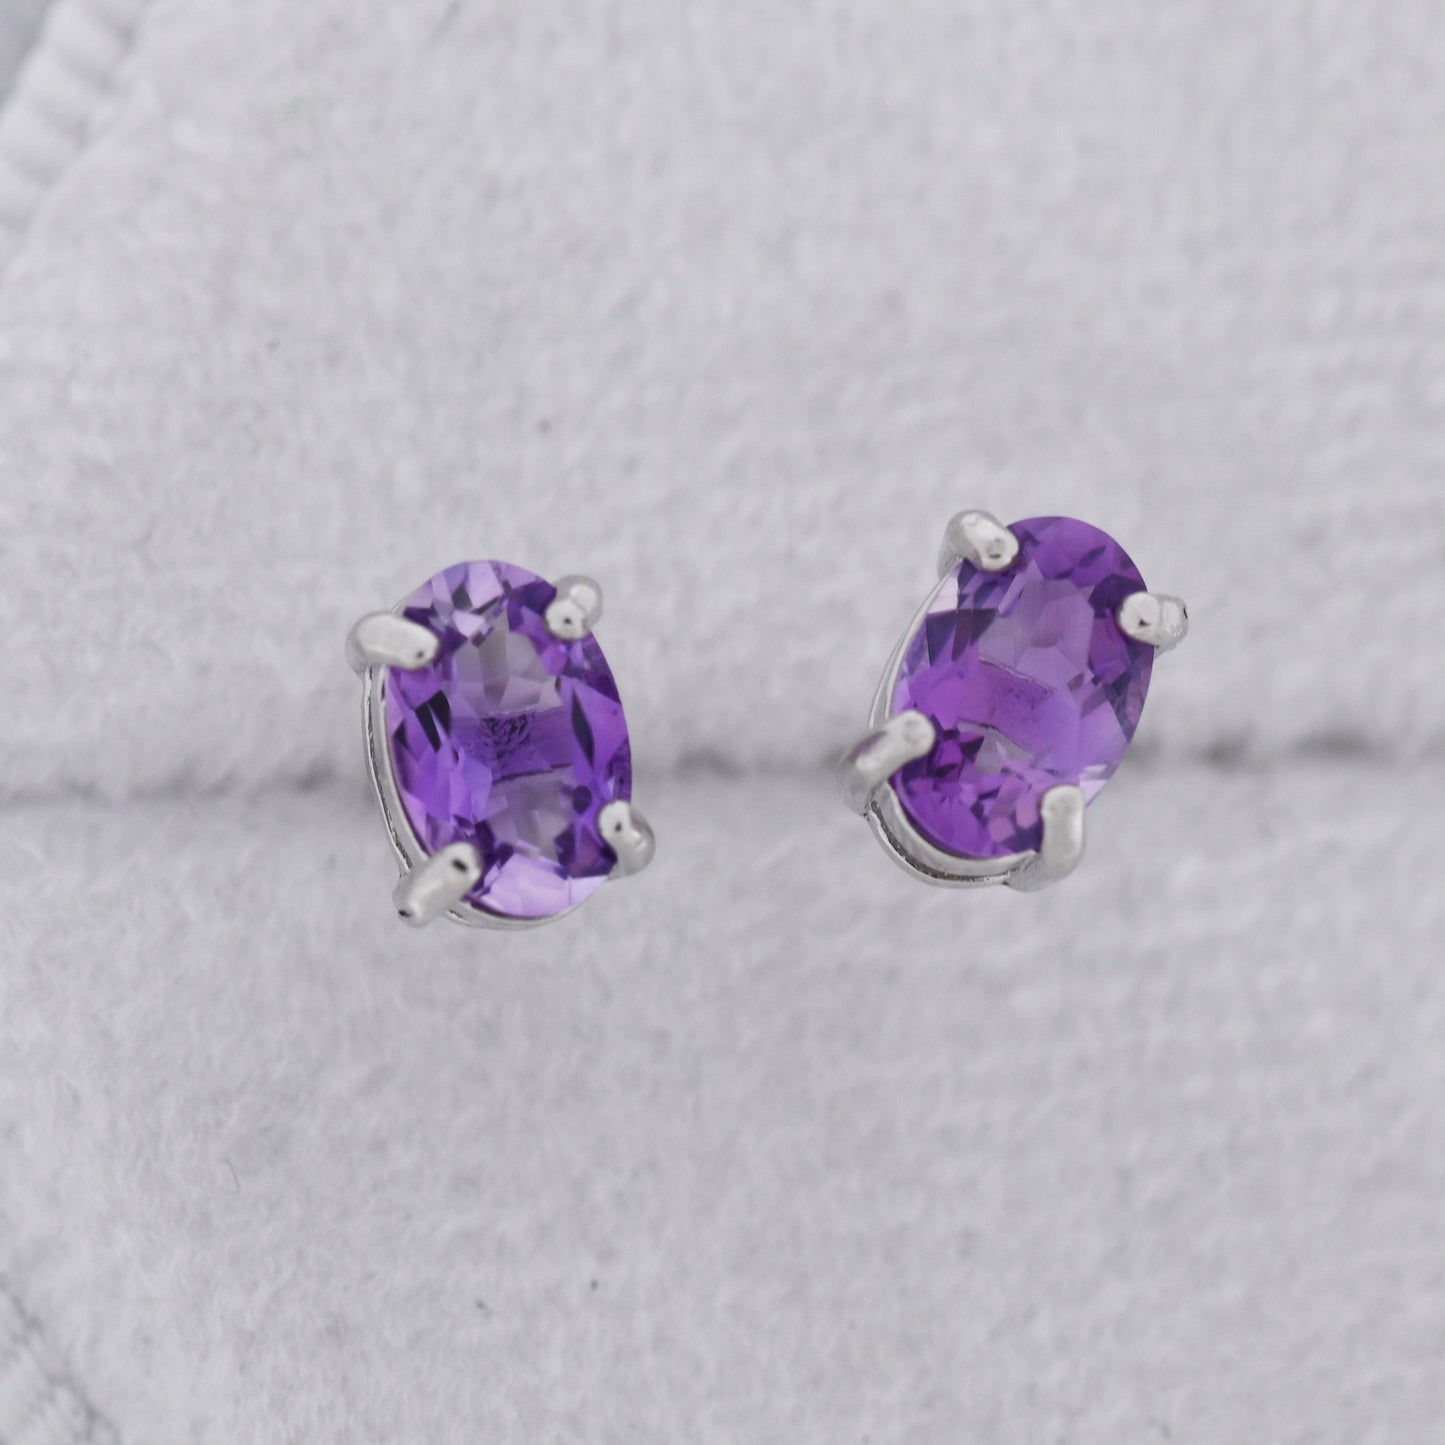 Genuine Amethyst Crystal Stud Earrings in Sterling Silver, Natural Purple Amethyst Oval Stud Earrings, February Birthstone